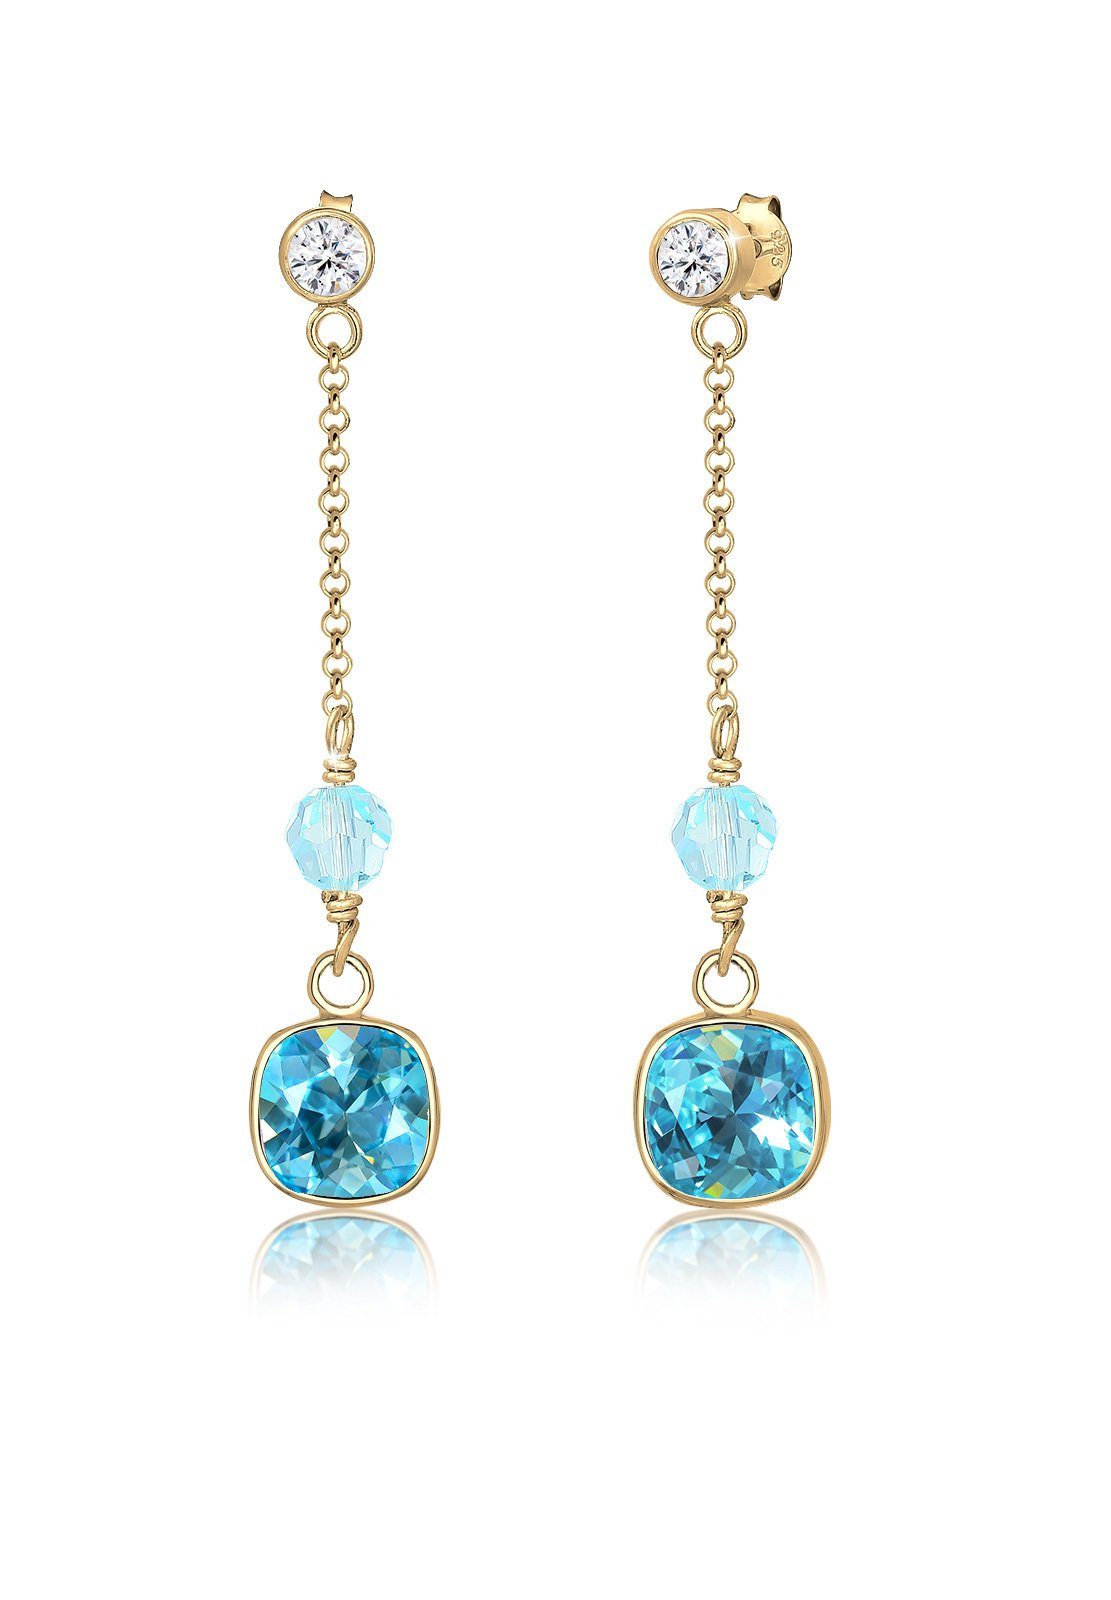 Damen Schmuck Elli Premium Paar Ohrhänger Kristalle Blau 925 Silber vergoldet